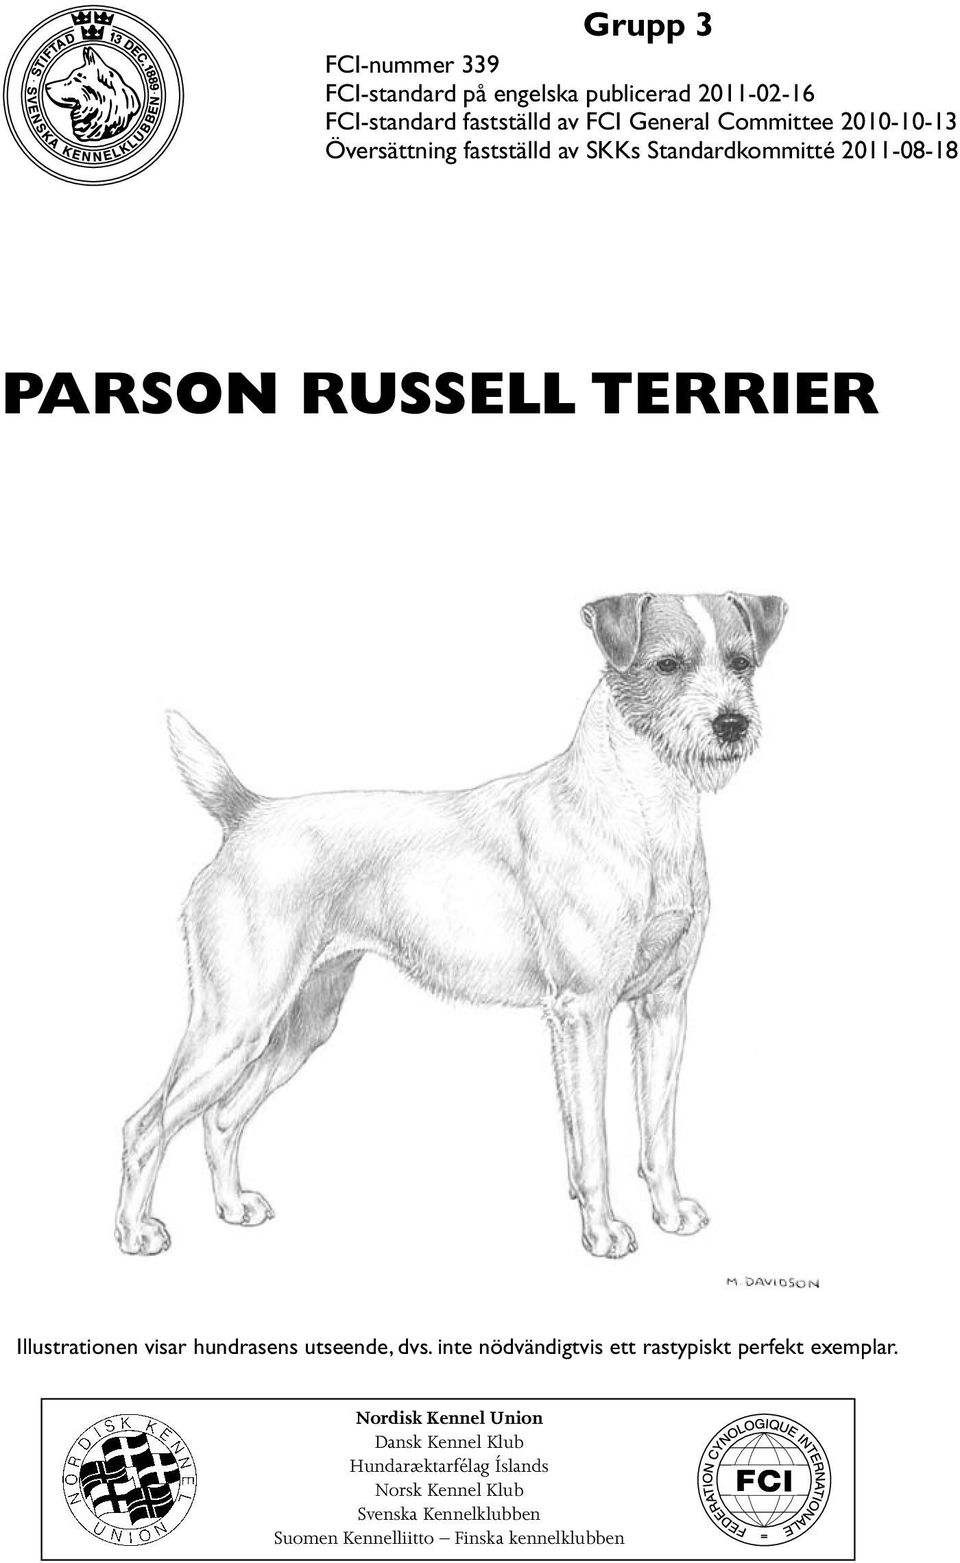 Illustrationen visar hundrasens utseende, dvs. inte nödvändigtvis ett rastypiskt perfekt exemplar.